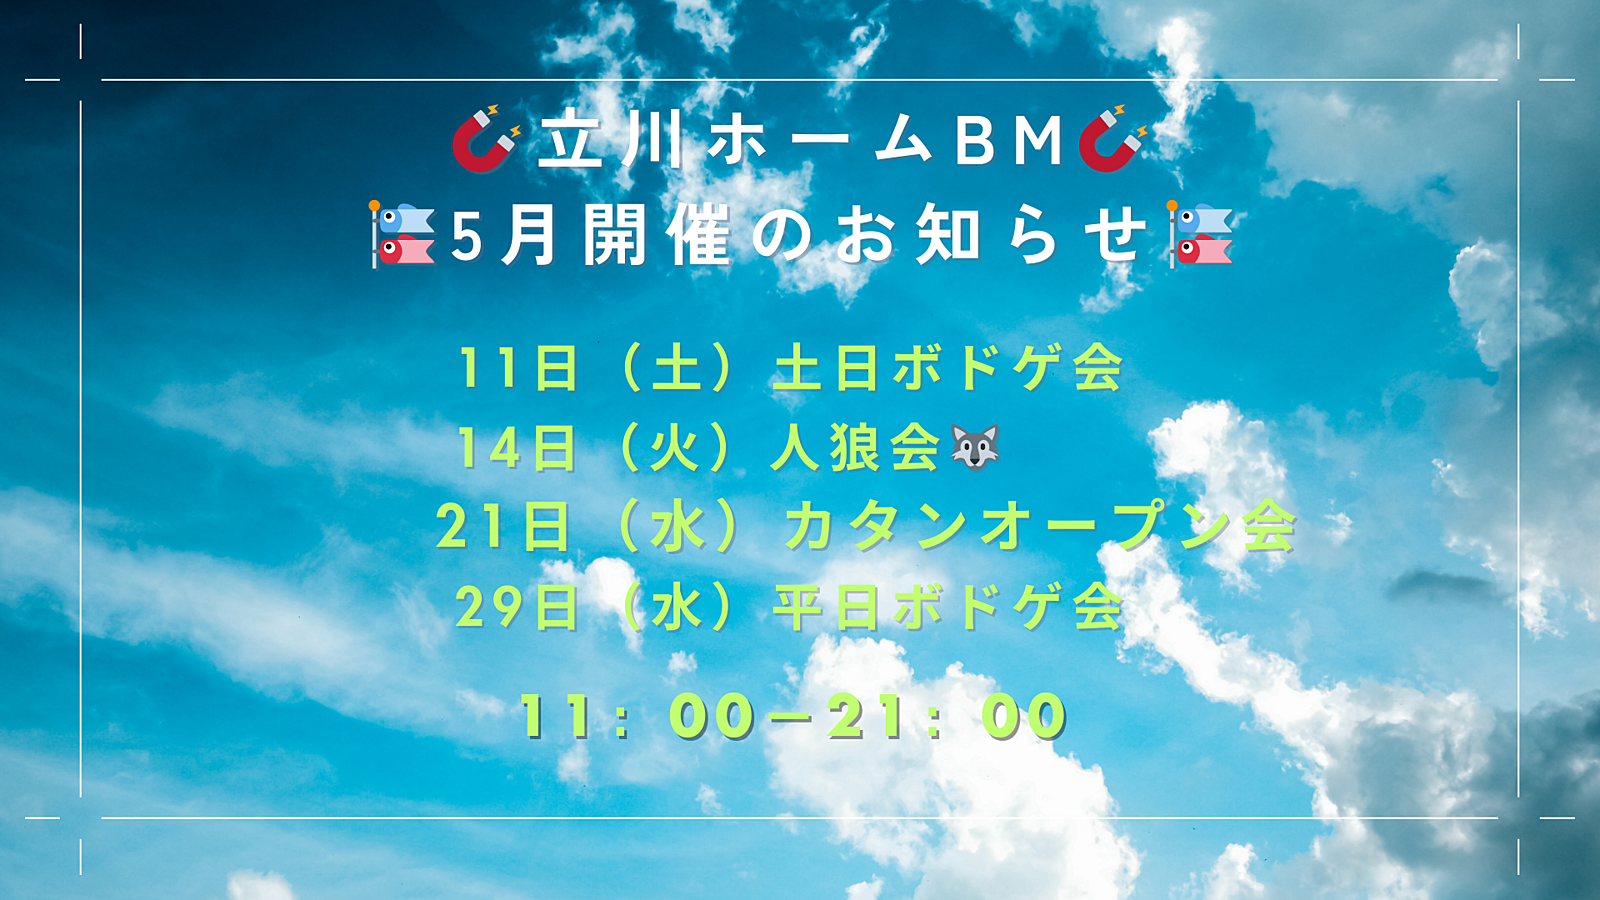 5月29日(水) 平日ボードゲーム会.vol30@🧲立川ホームBM🧲